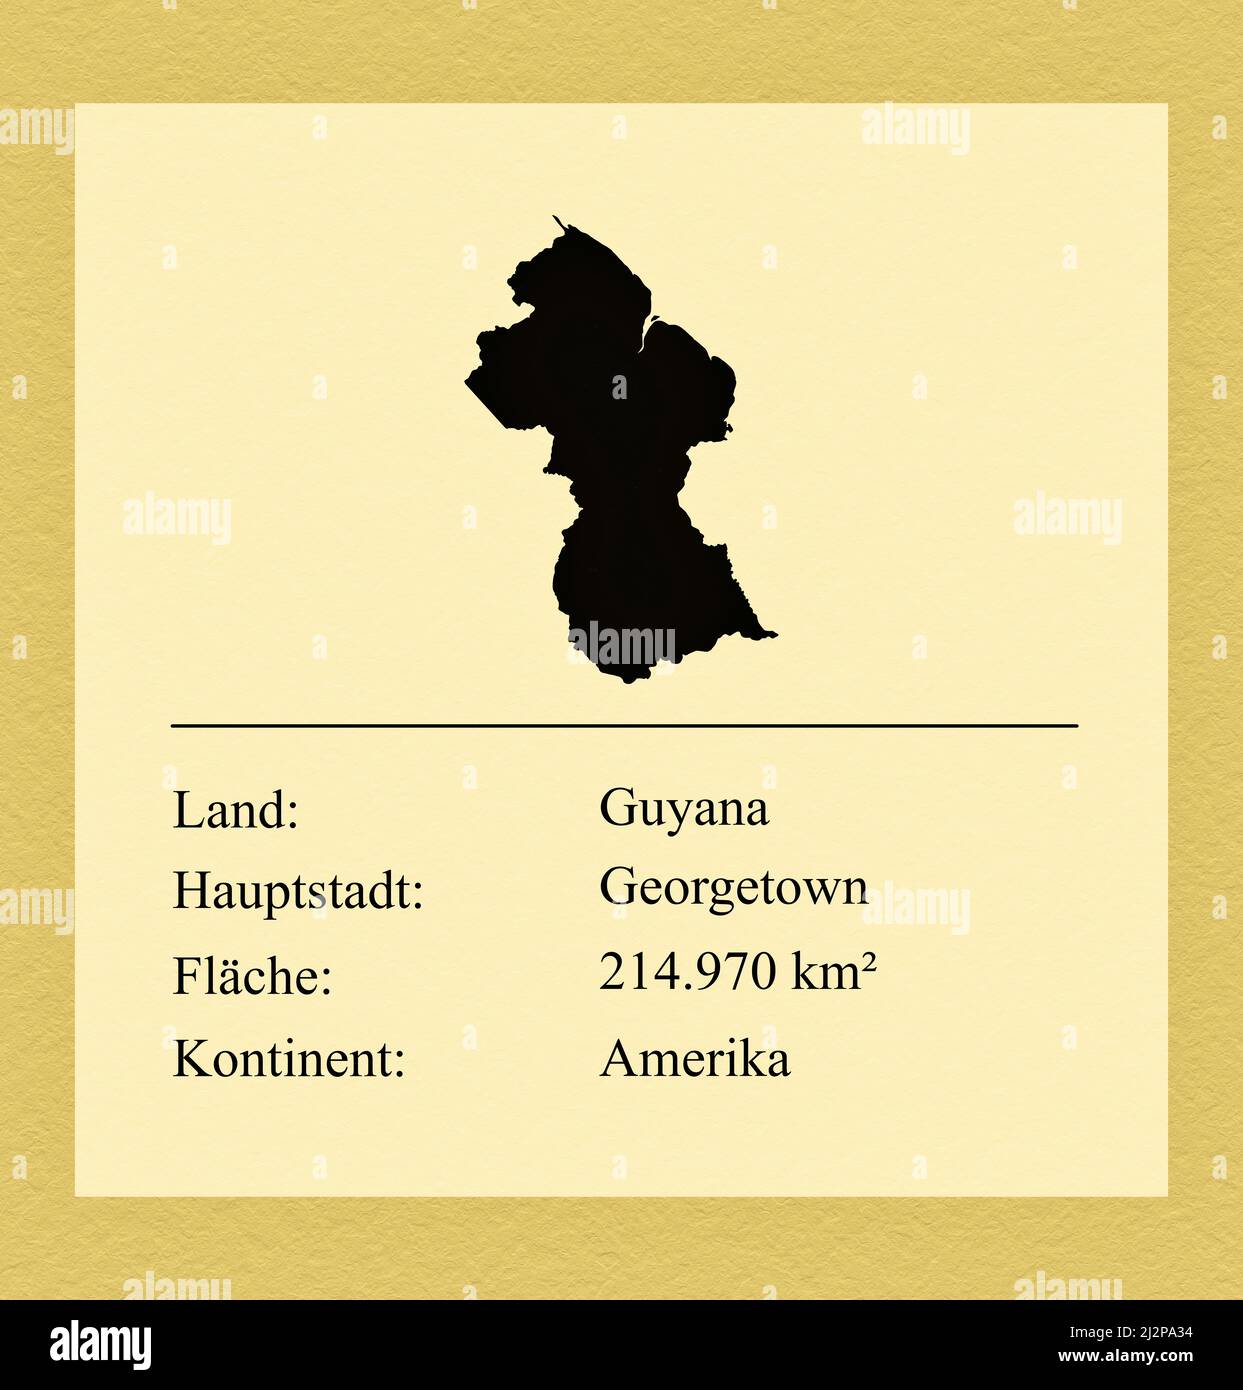 Umrisse des Landes Guyana, darunter ein kleiner Steckbrief mit Ländernamen, Hauptstadt, Fläche und Kontinent Foto de stock